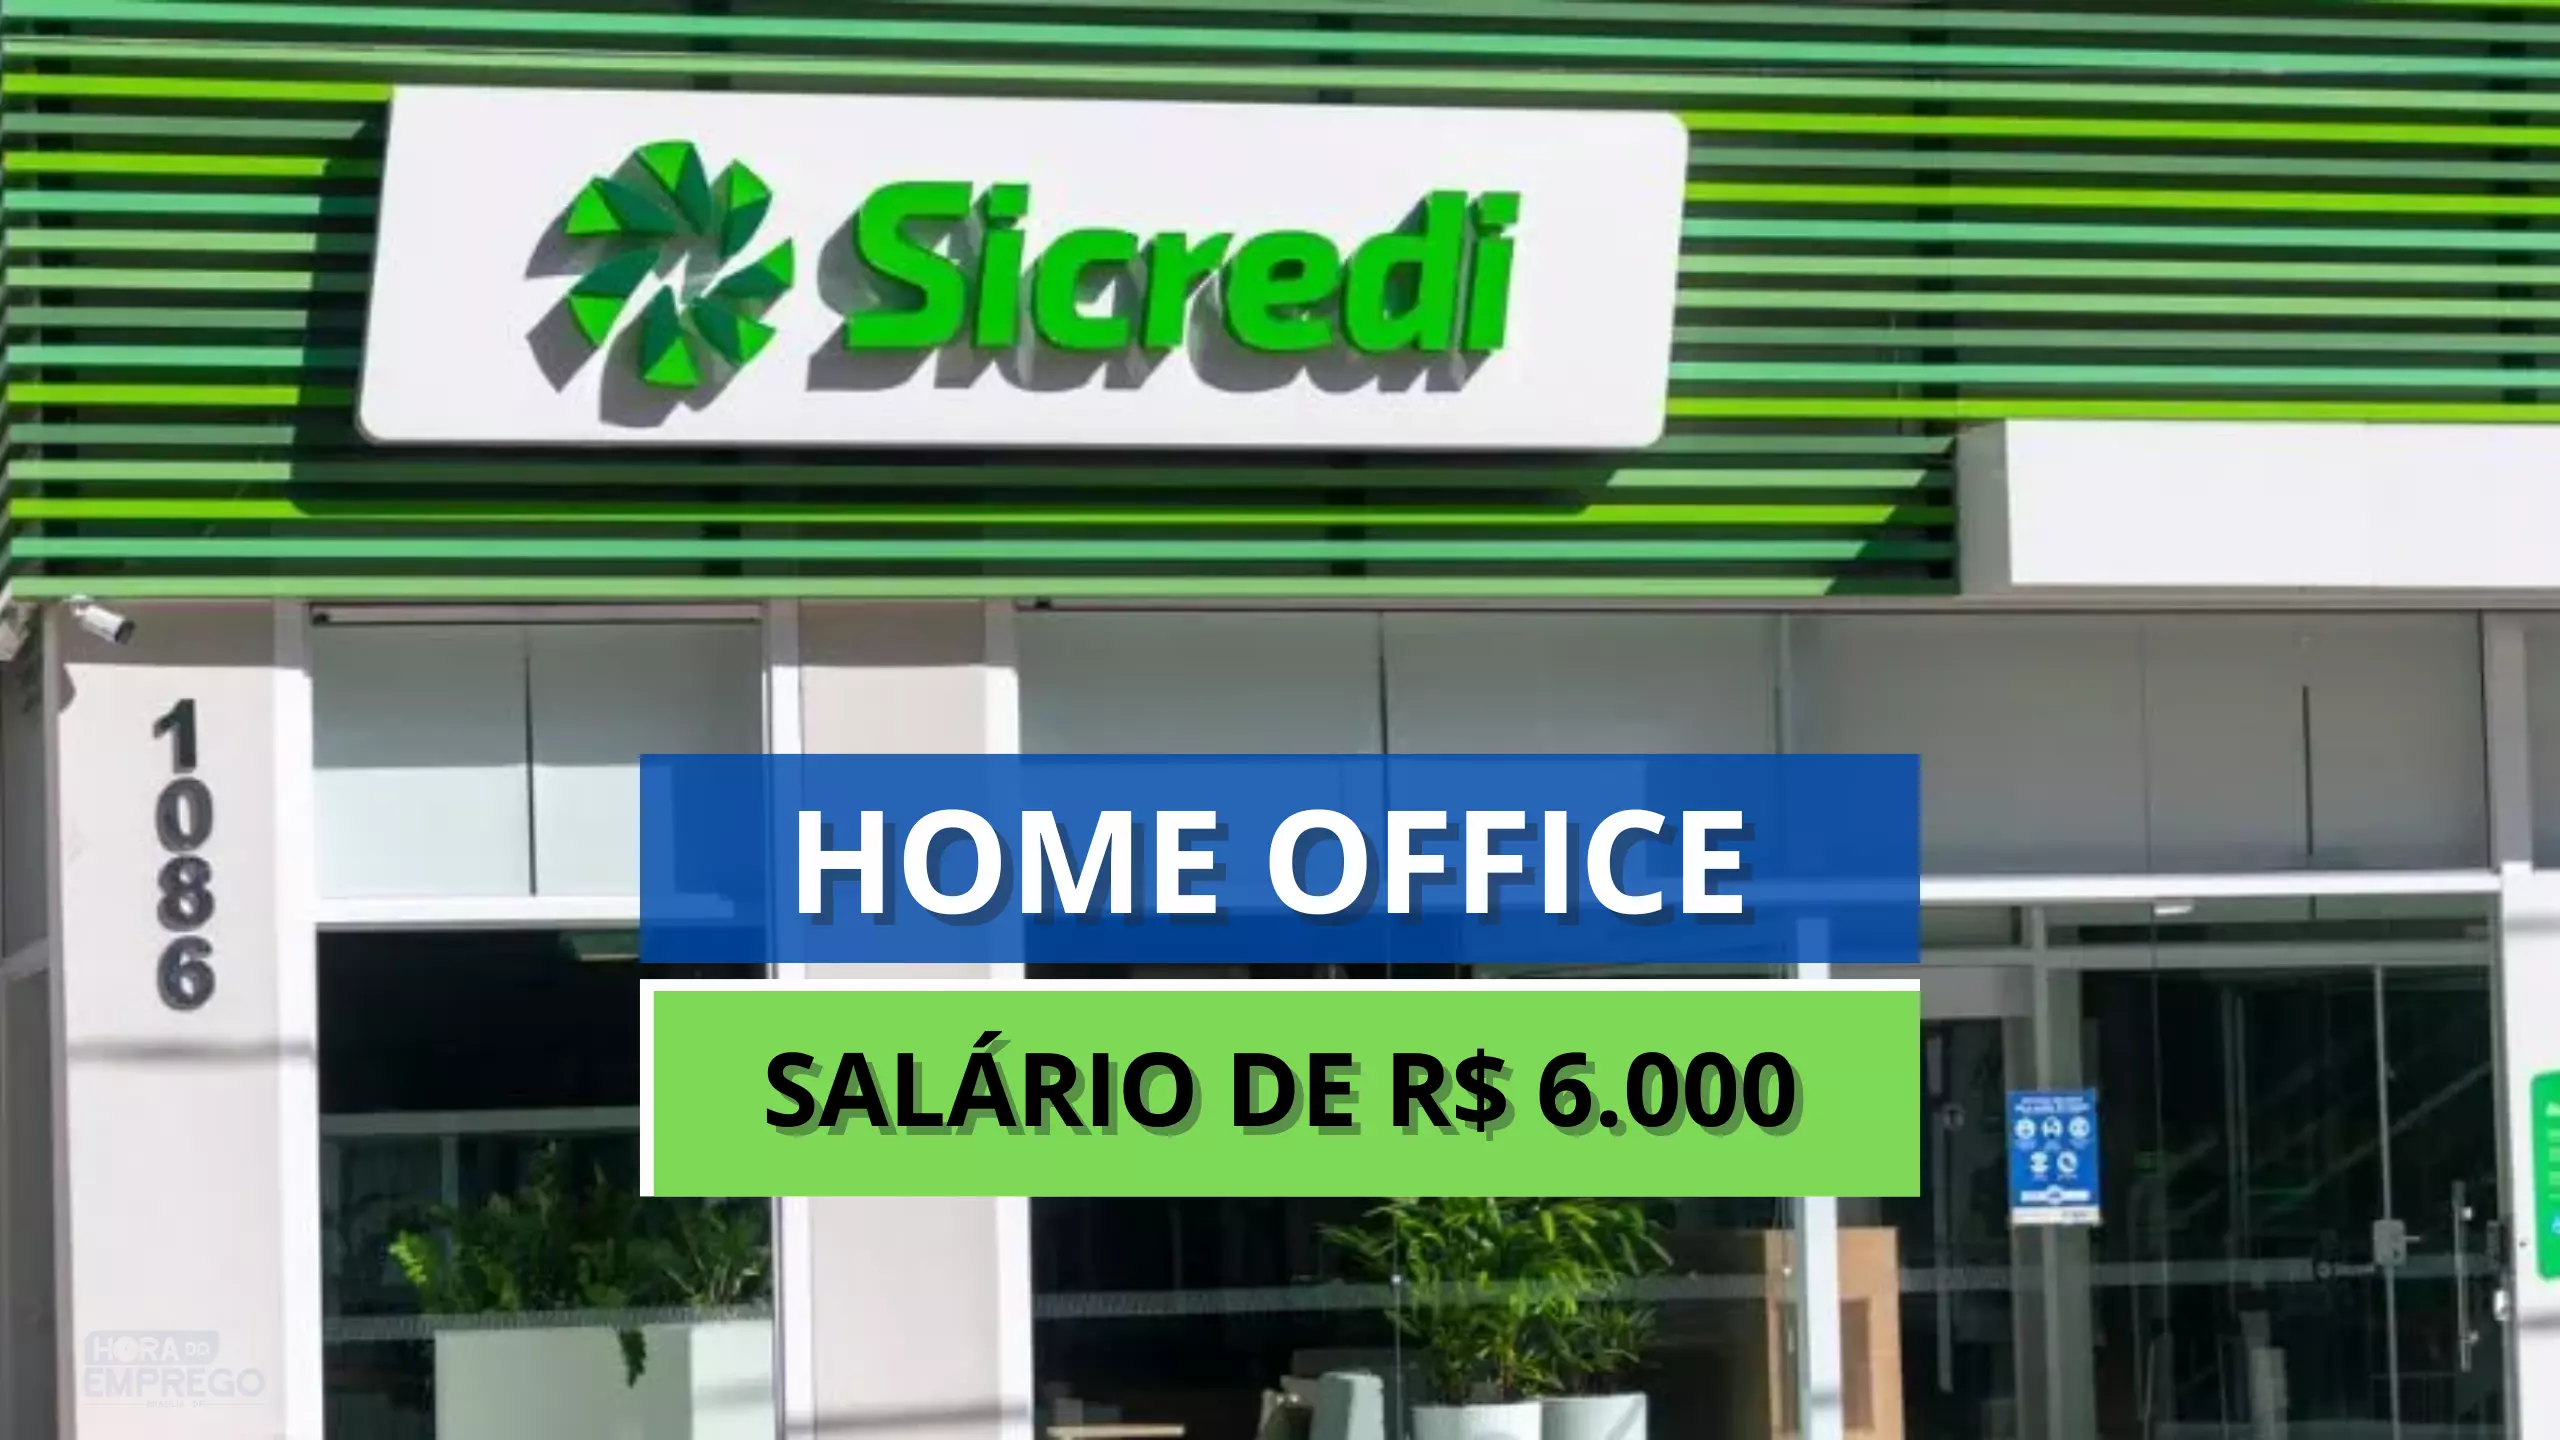 Banco Sicredi anuncia vagas HOME OFFICE para trabalhar de casa no Time de Crédito como Agile Coach